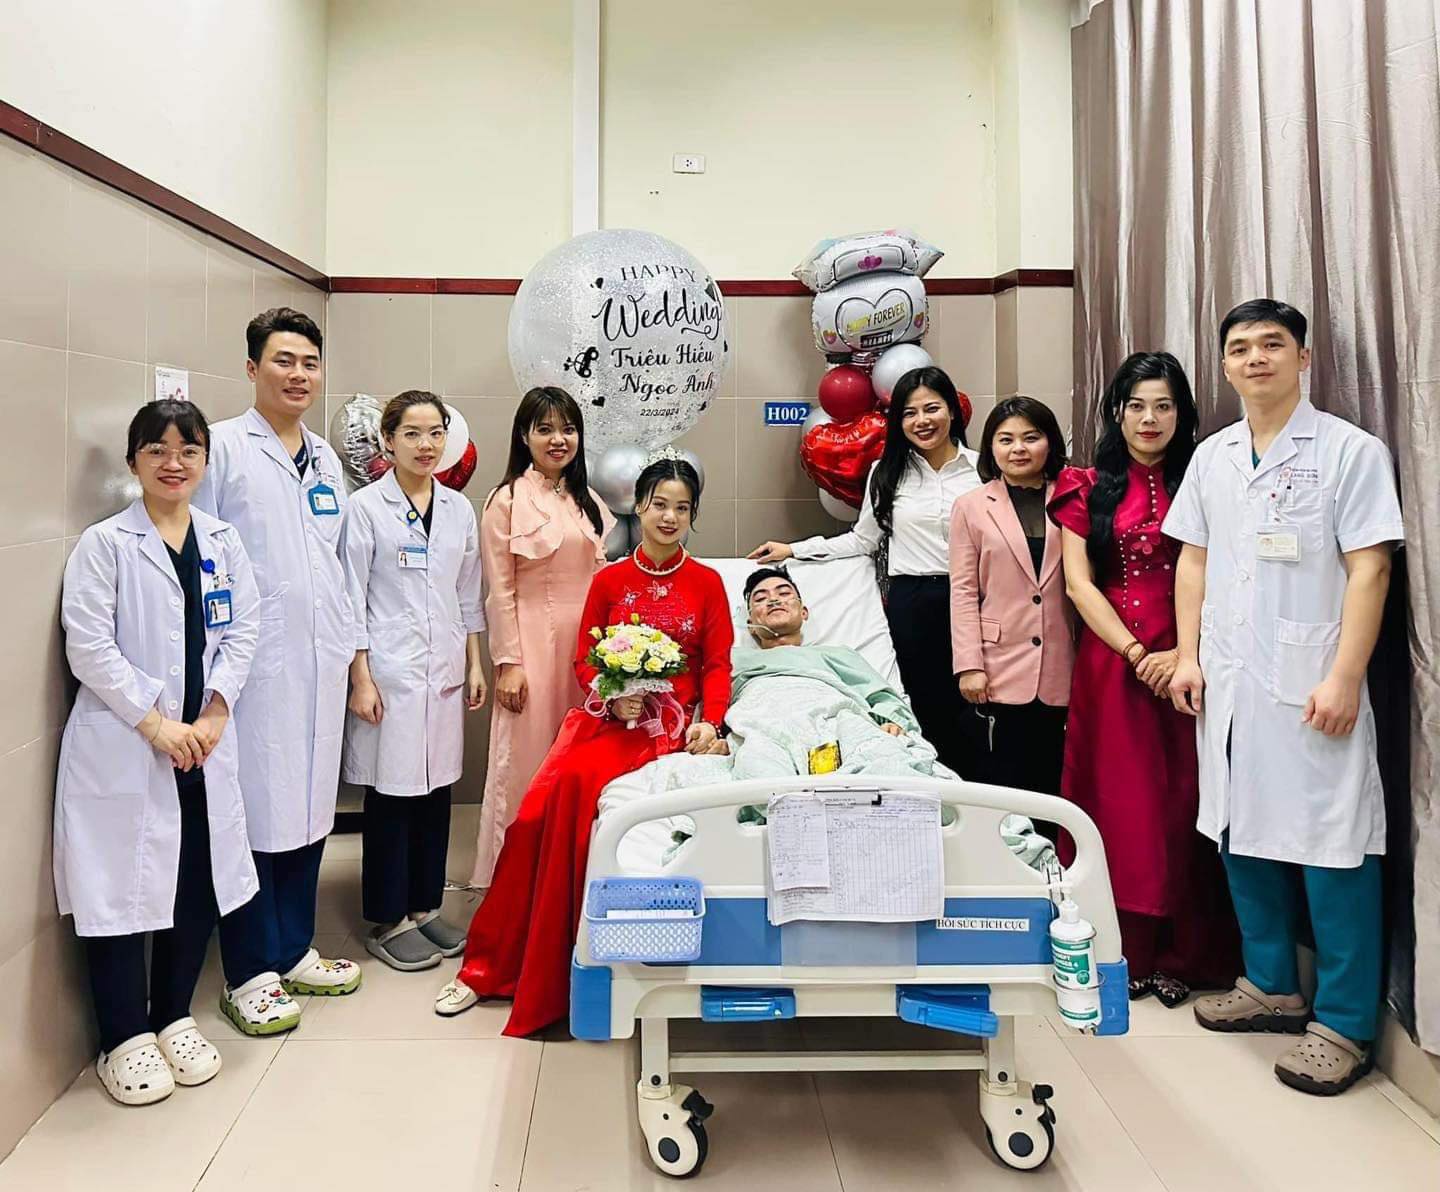 Xúc động đám cưới trong bệnh viện tại Lạng Sơn, cô dâu chú rể trao nhẫn trên giường bệnh - ảnh 1